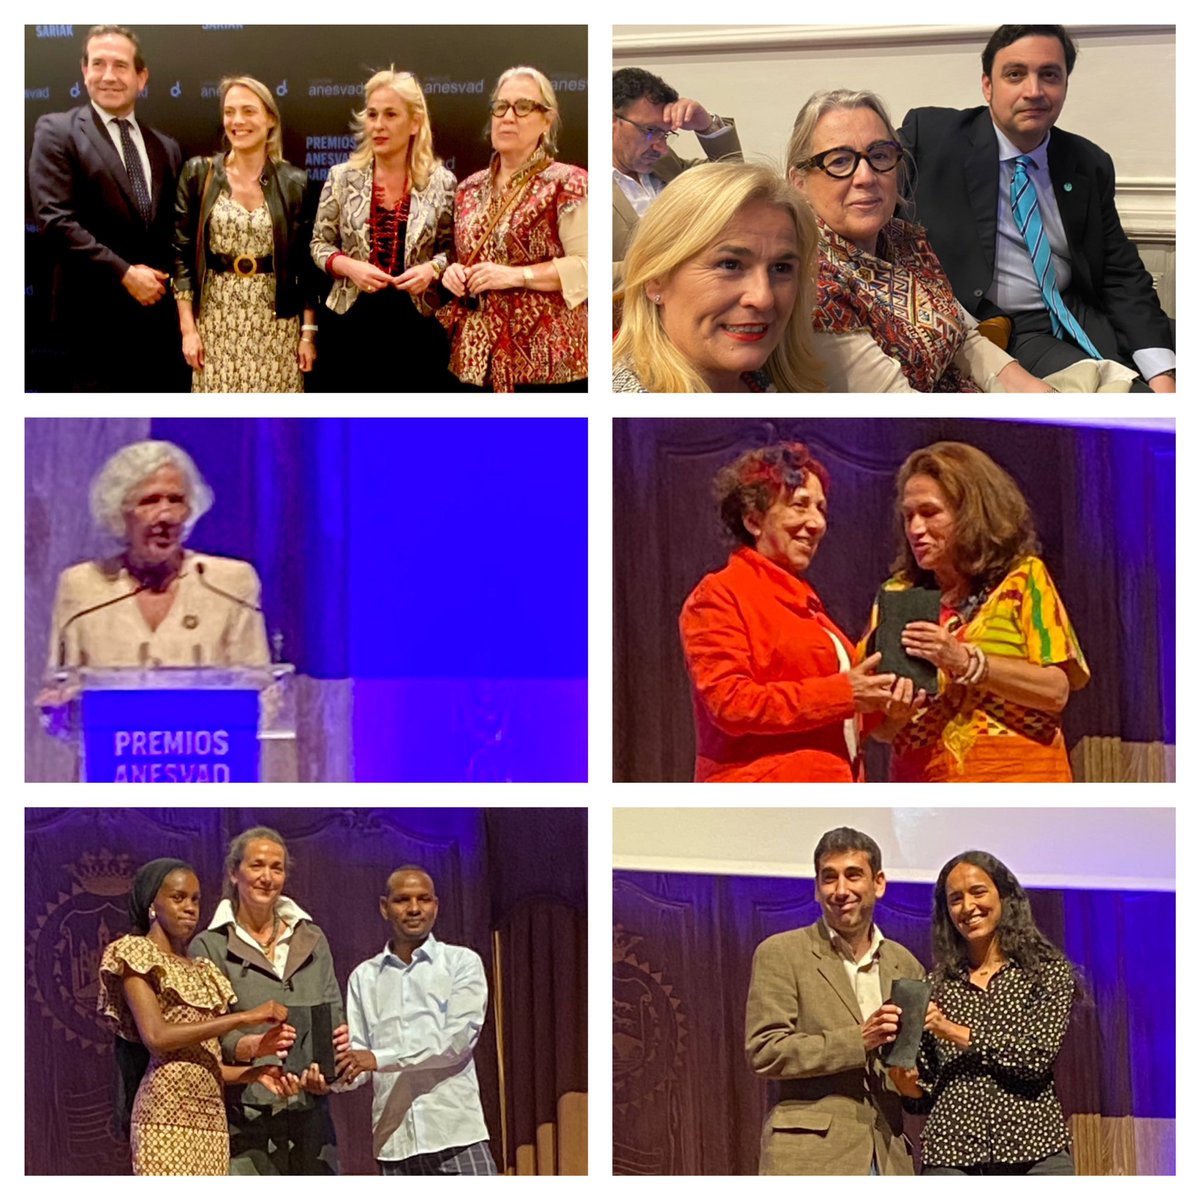 IX edición Premios Fundación Anesvad, en la @FilarmonicaBIO Enhorabuena a los premiados. Sor Ángela Gutiérrez Fundación Mozambique Sur Haaly Pular